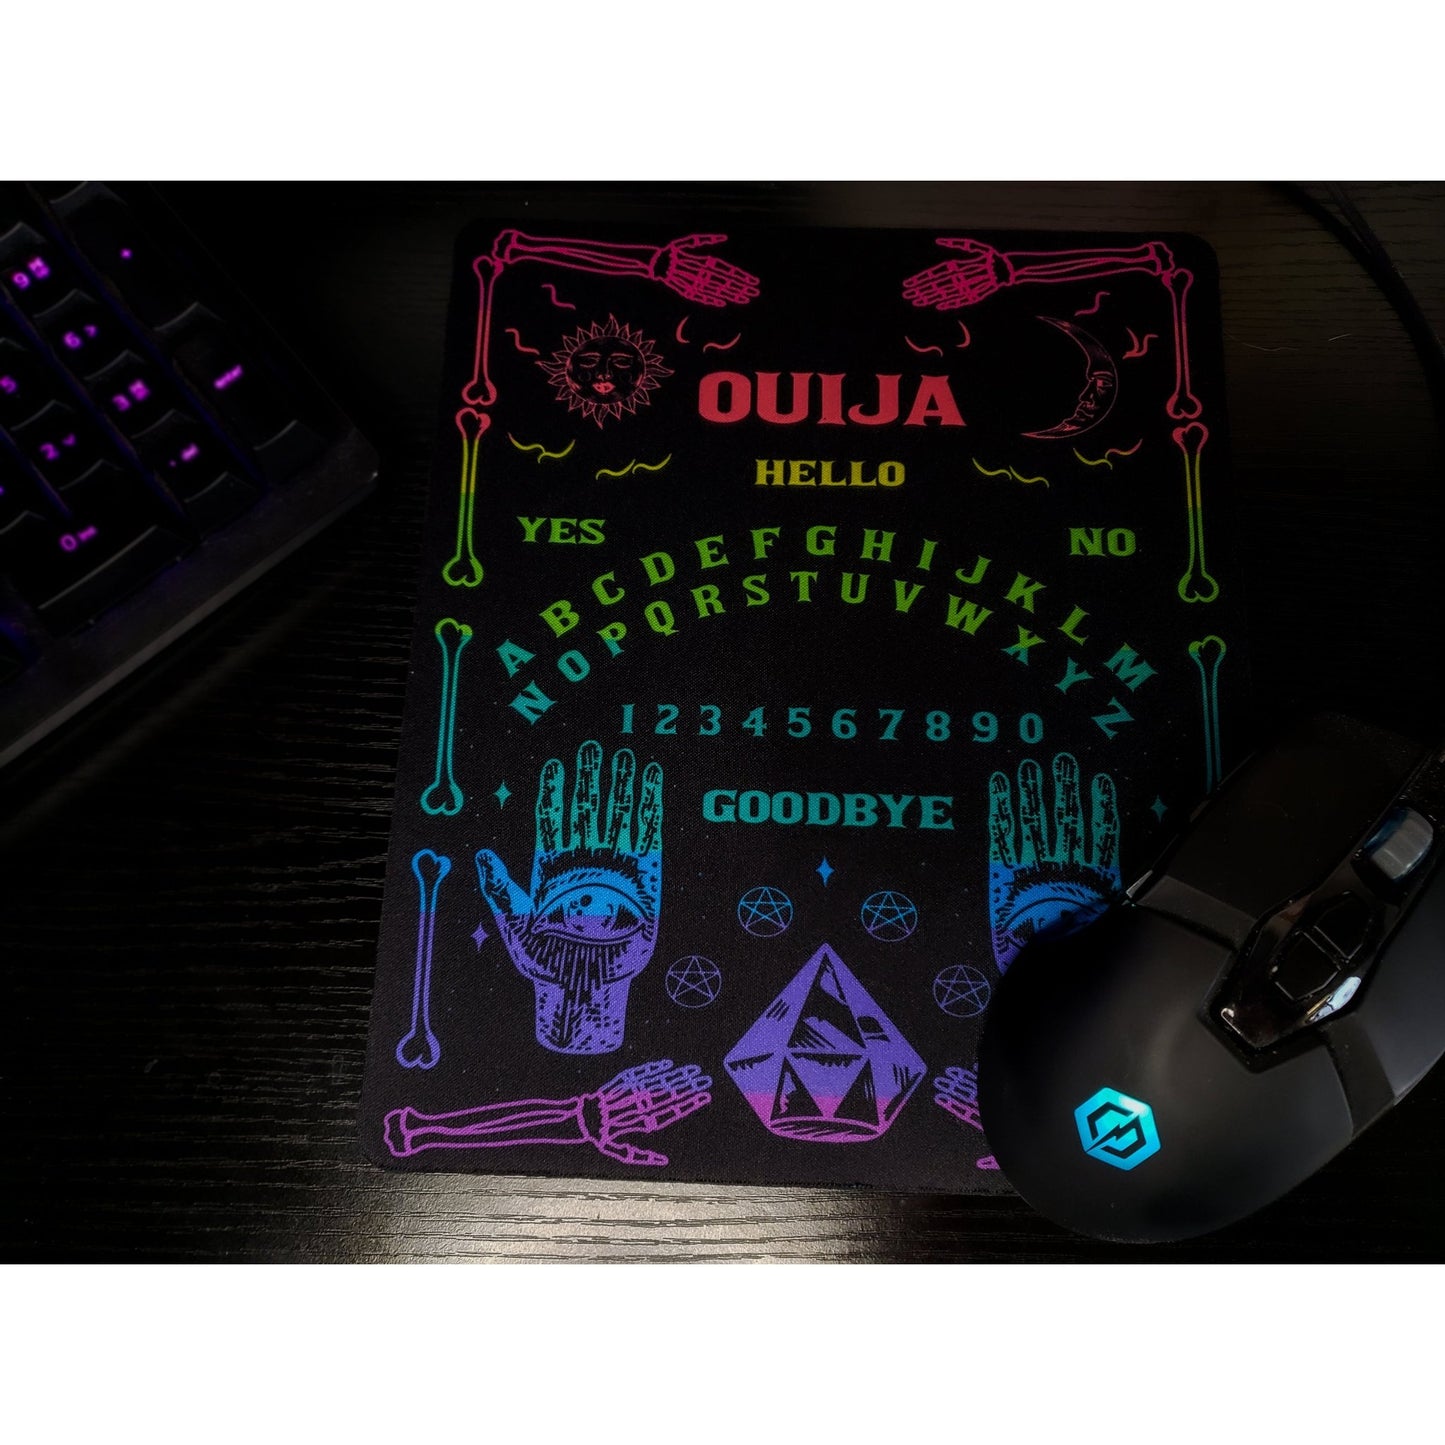 Rainbow Ouija Mousepad